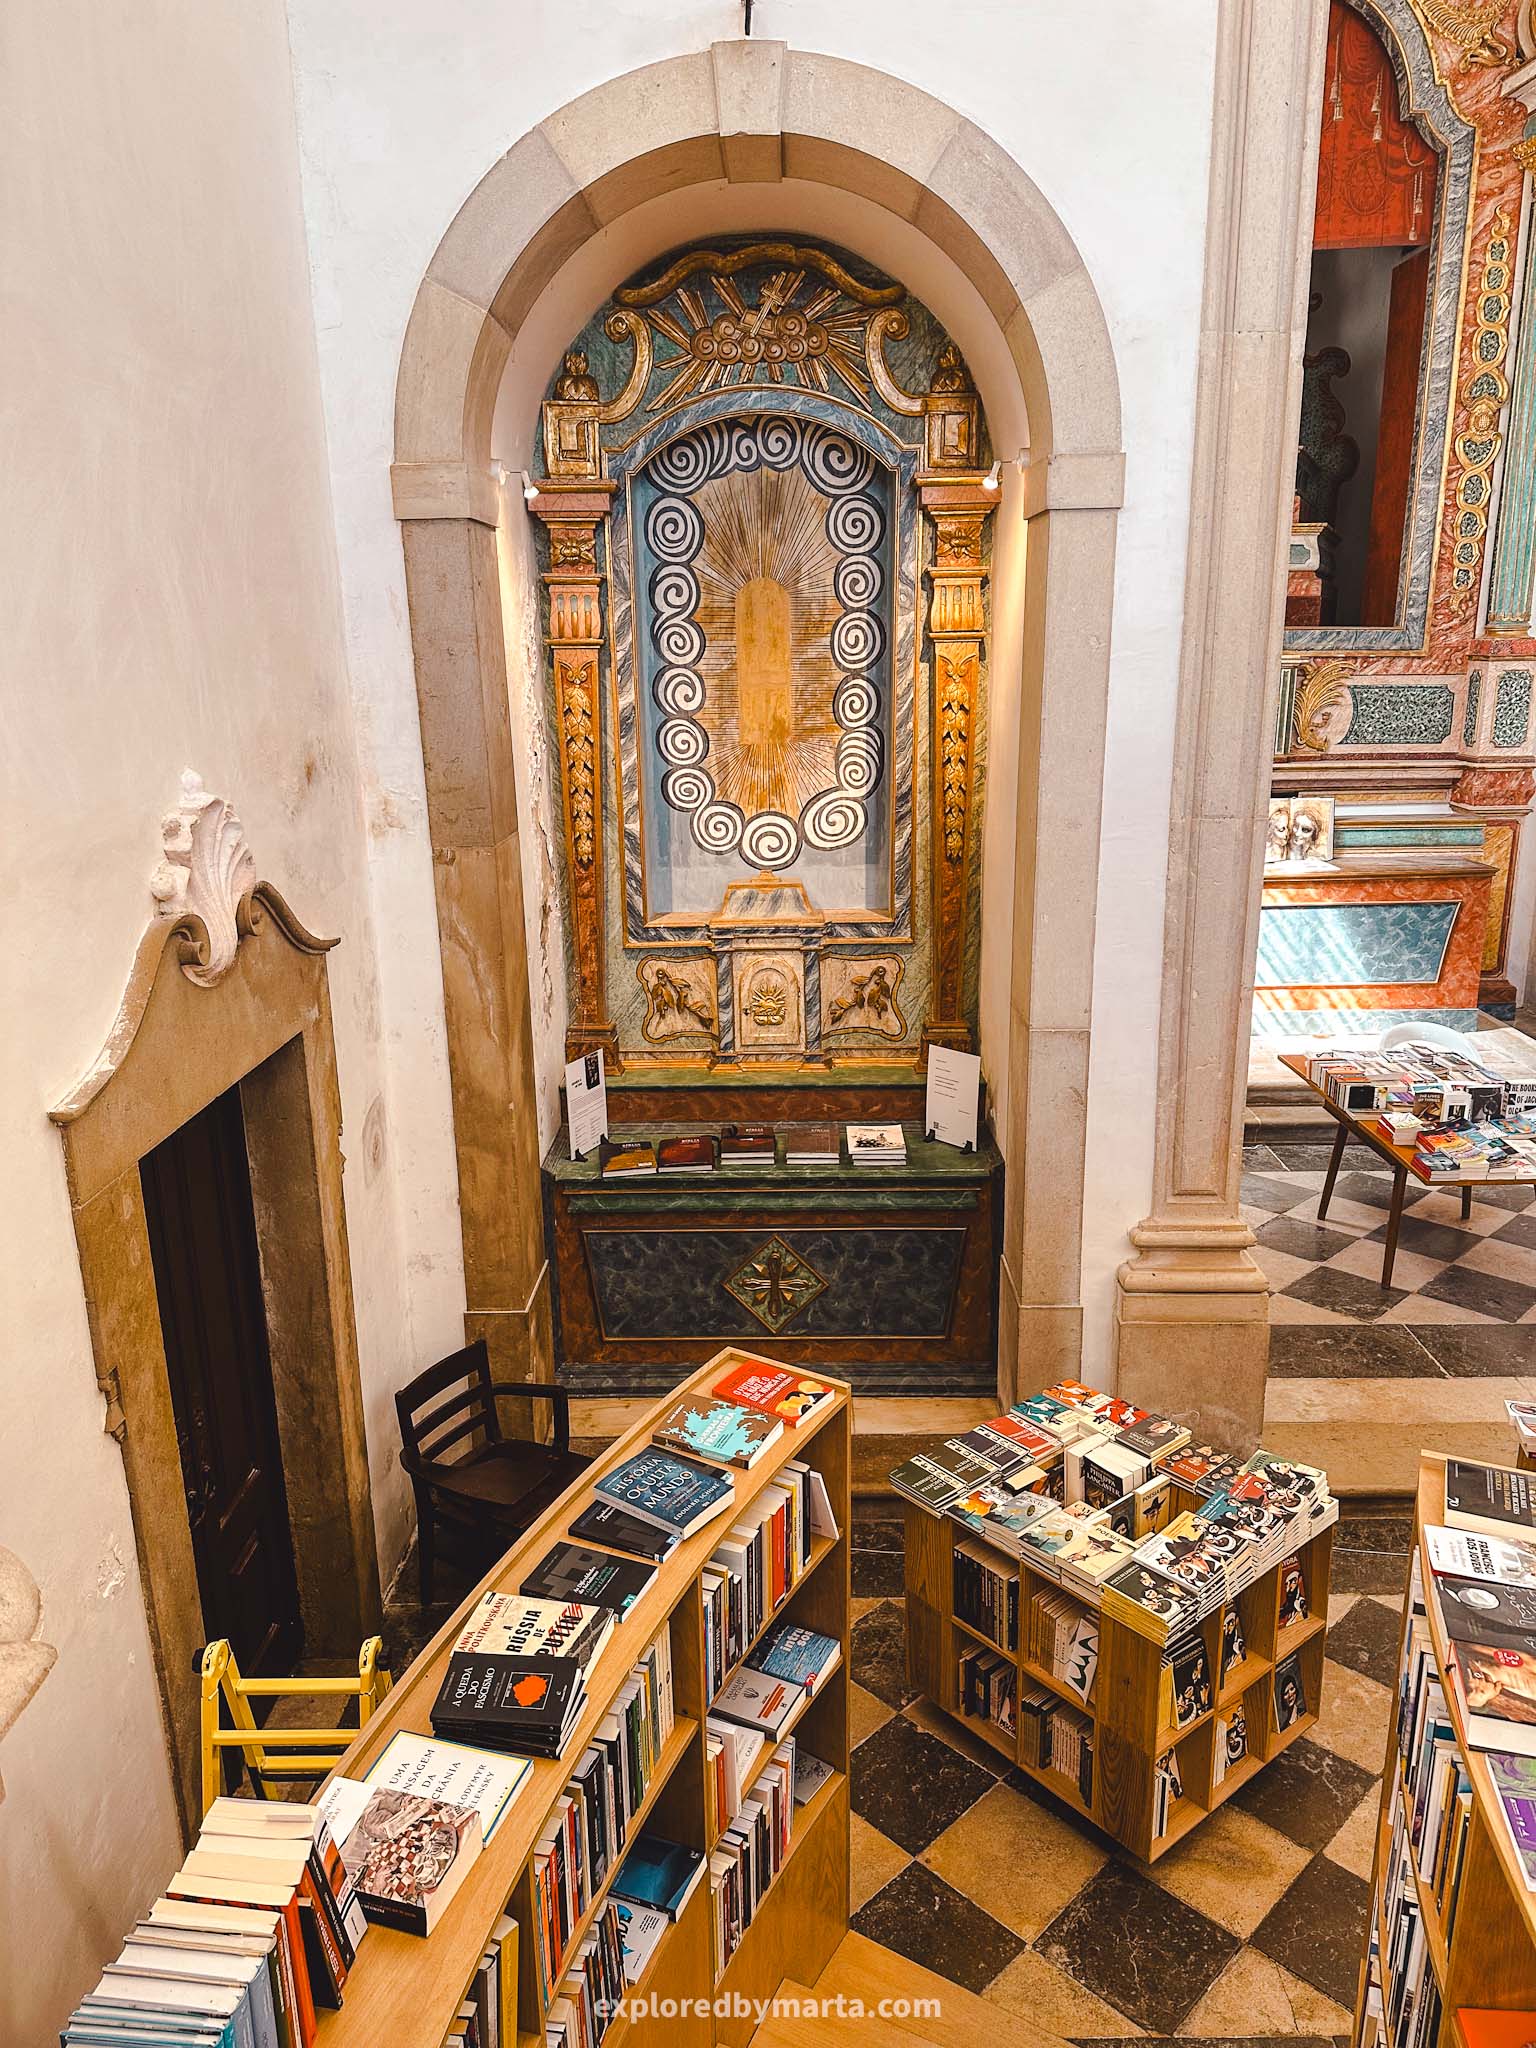 Óbidos, Portugal things to do-Livraria de São Tiago bookshop inside Igreja de São Tiago church